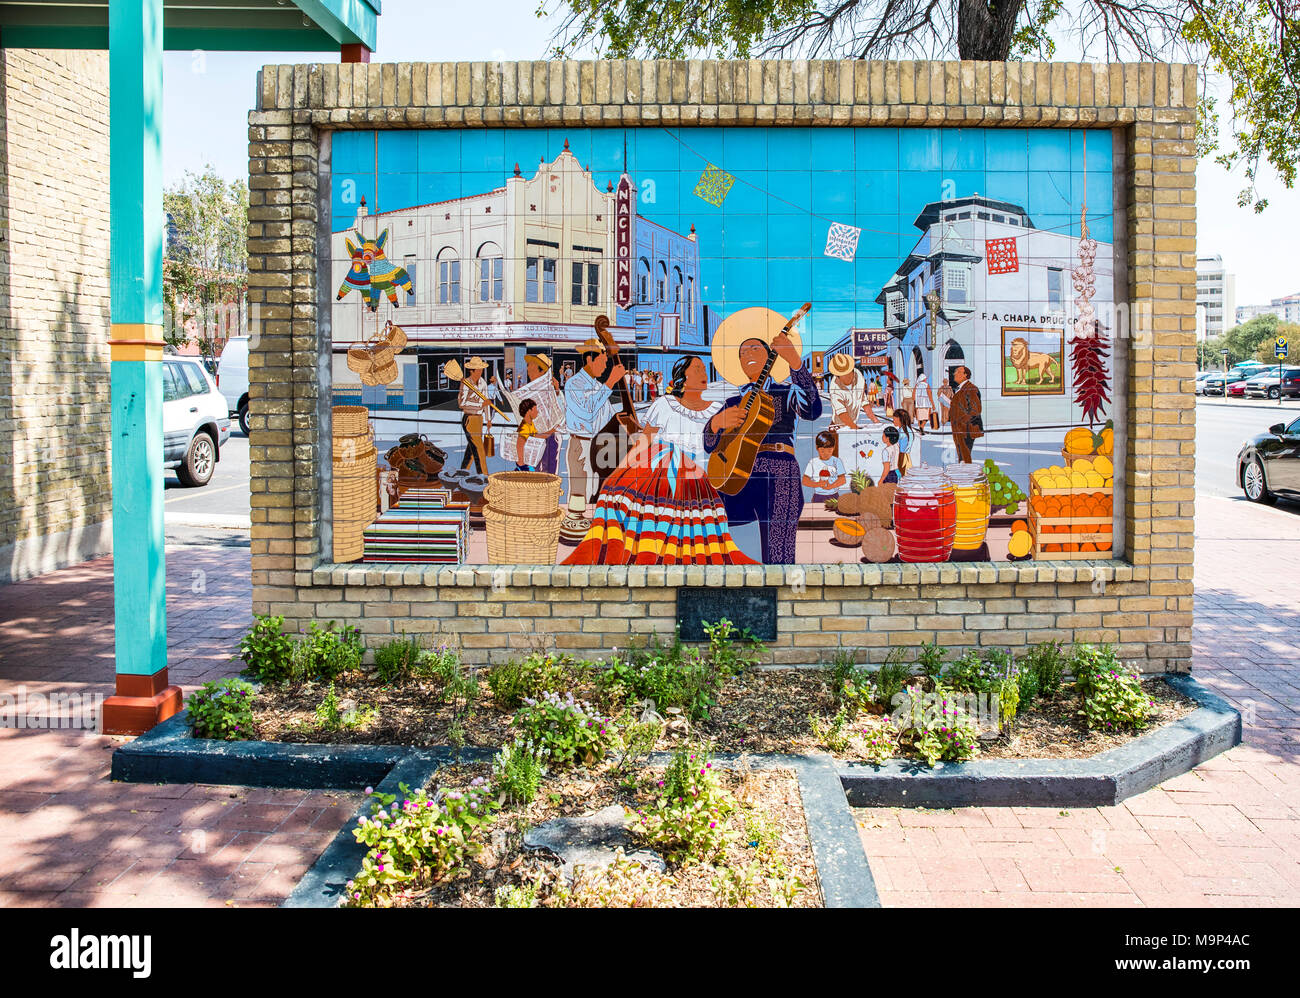 Ein Gemälde auf eine Kachel Wand außerhalb des historischen Marktplatz in San Antonio zeigt einen festlichen Markt im Freien. Stockfoto